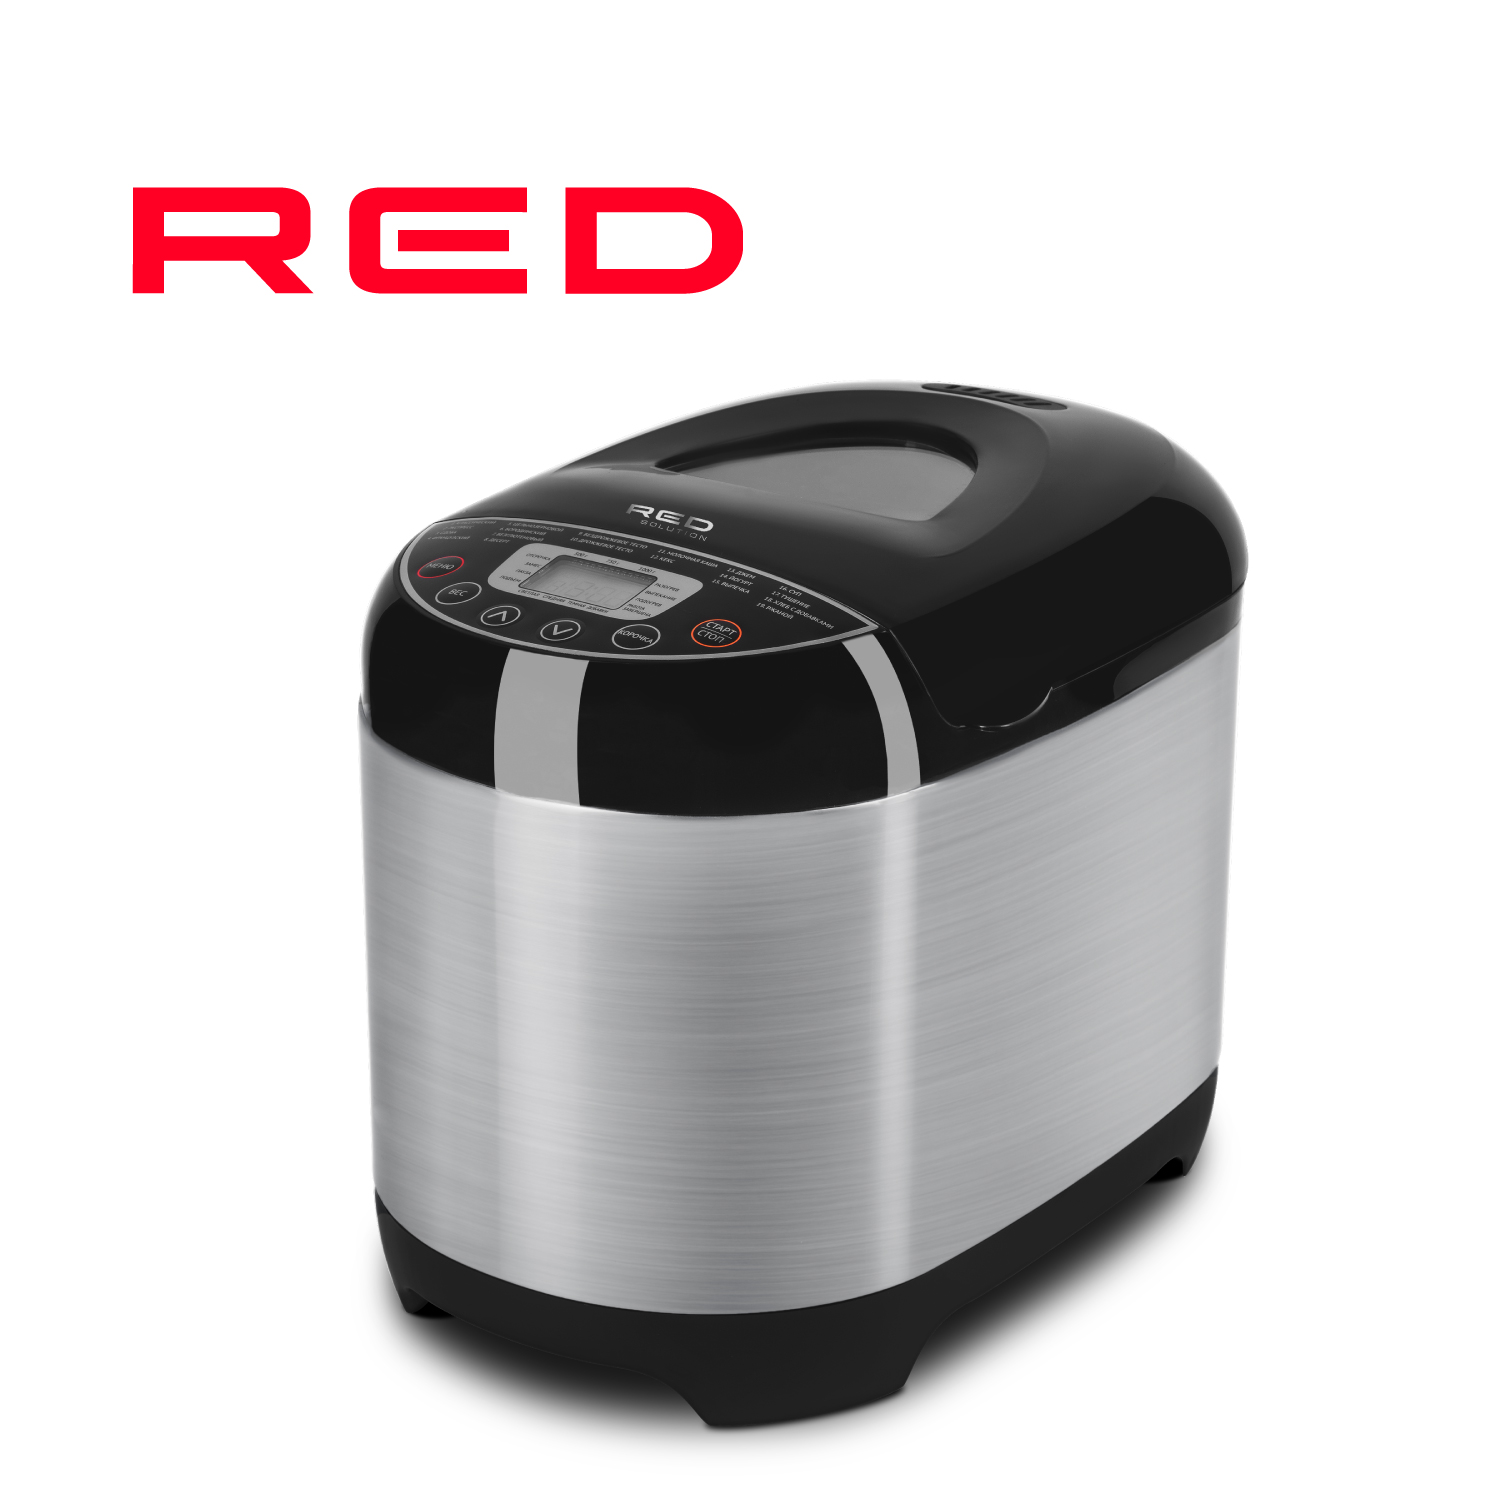 Хлебопечка RED SOLUTION RBM-M1911 серебристый, серый, черный пылесос red solution rv ur3200 серый